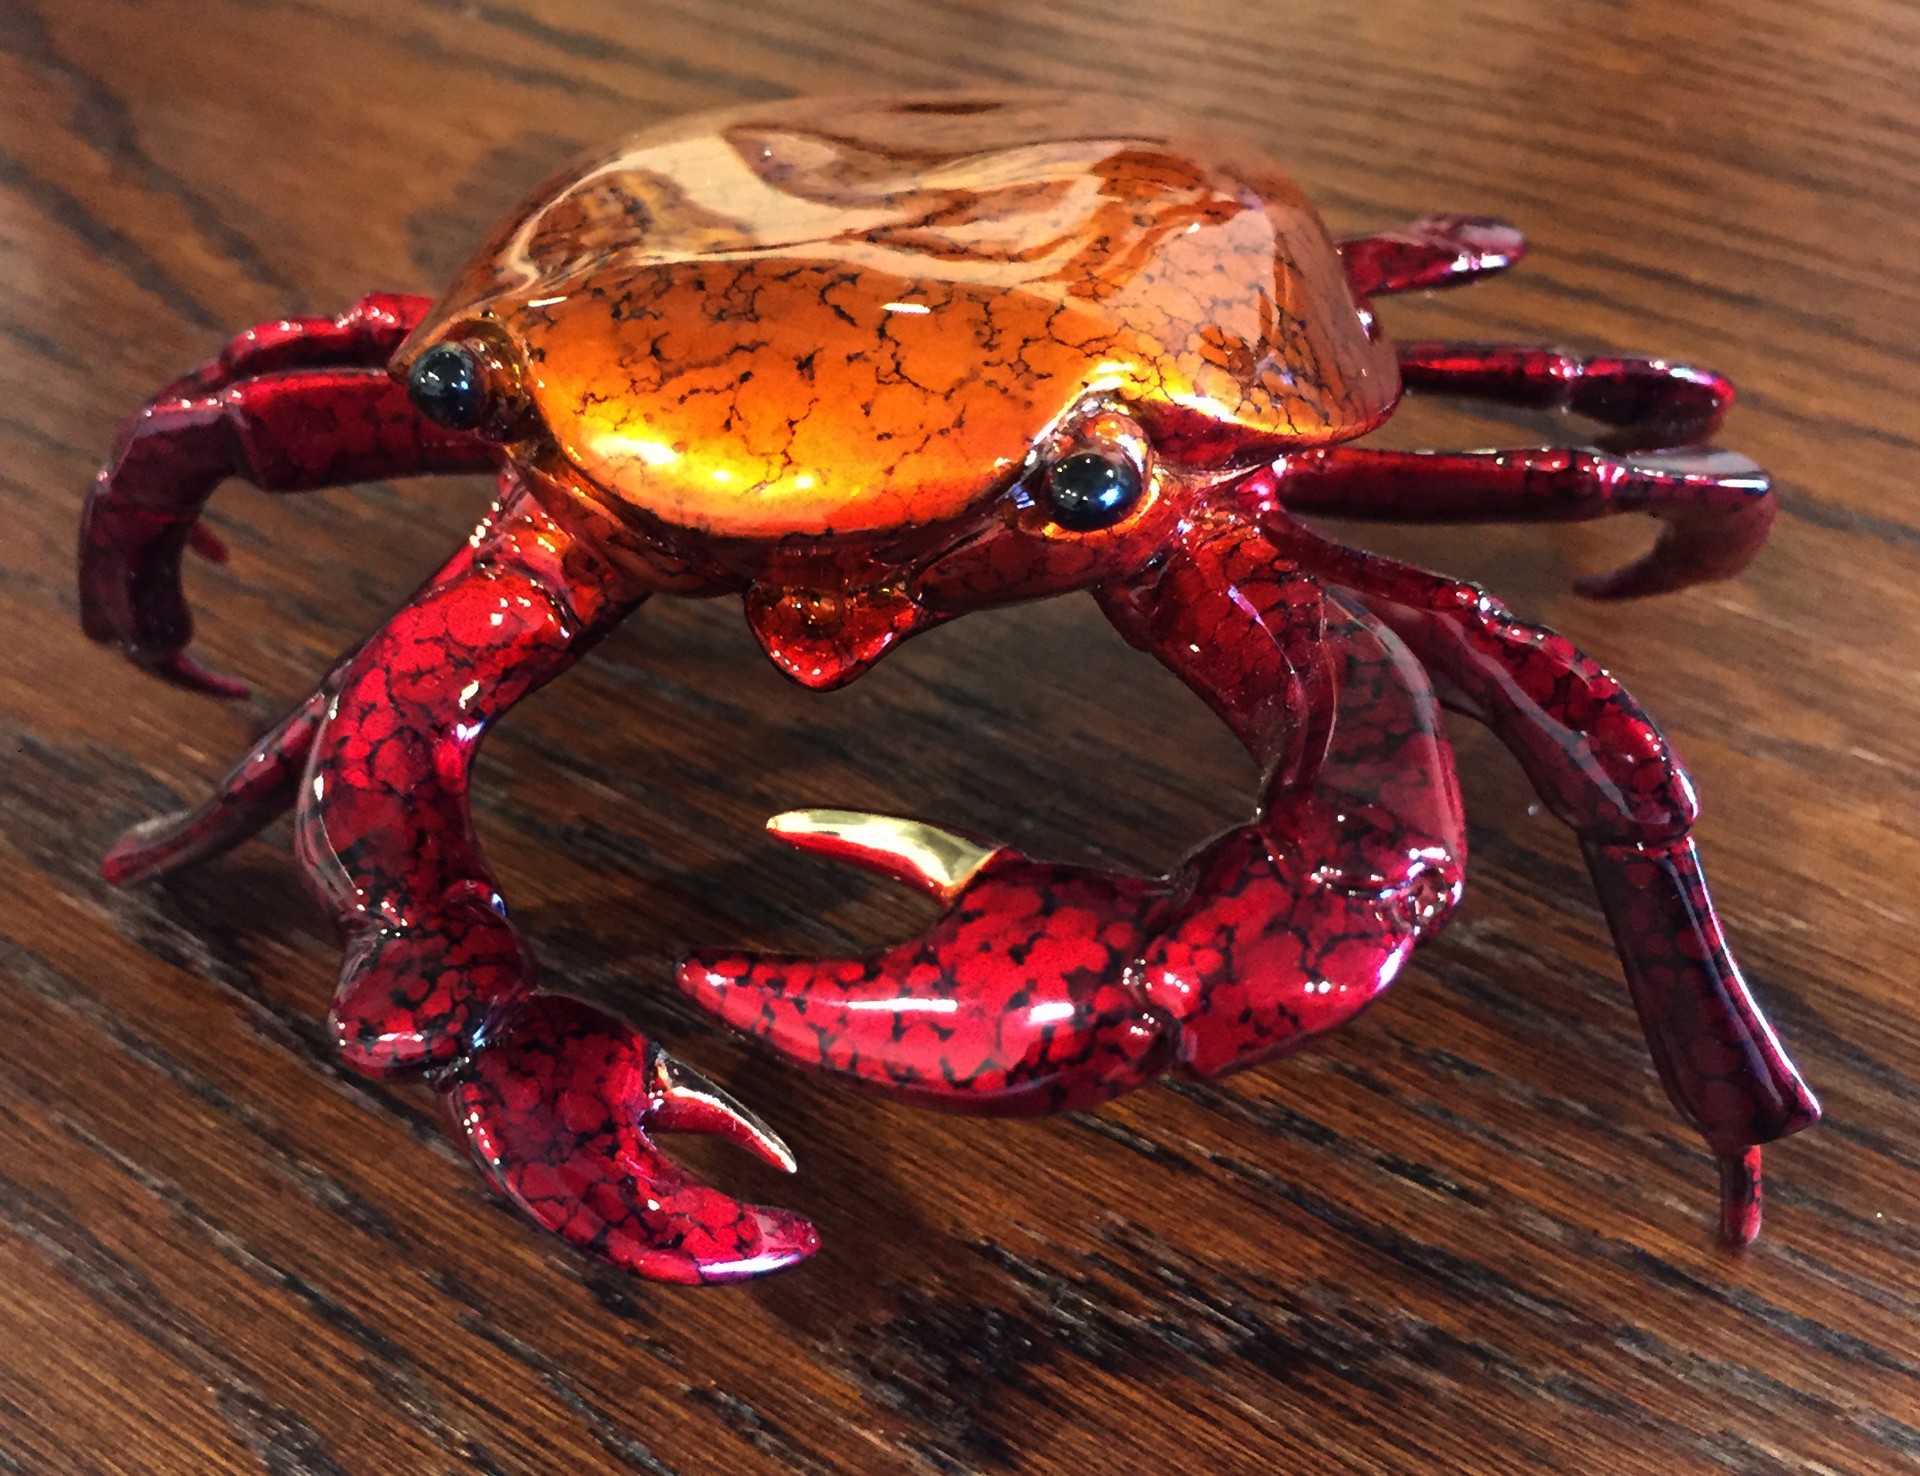 Medium Sally Lightfoot Crab by Brian Arthur